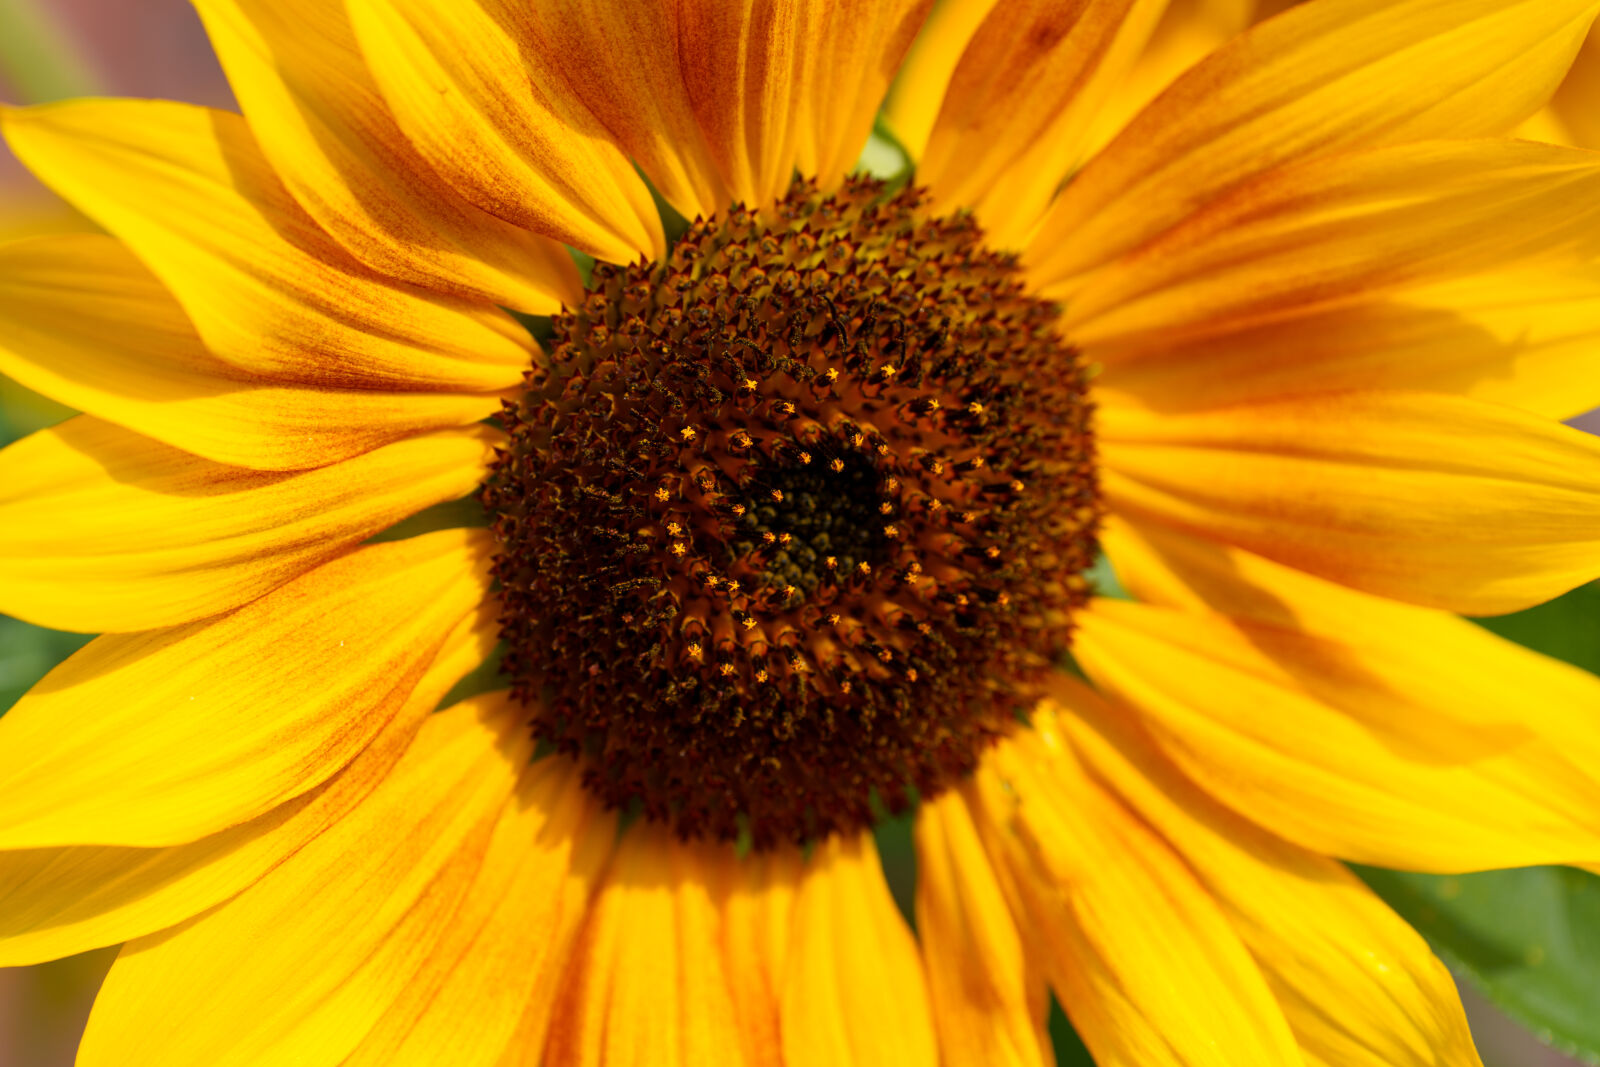 Sony FE 70-200mm F4 G OSS II sample photo. Flower sunshine photography